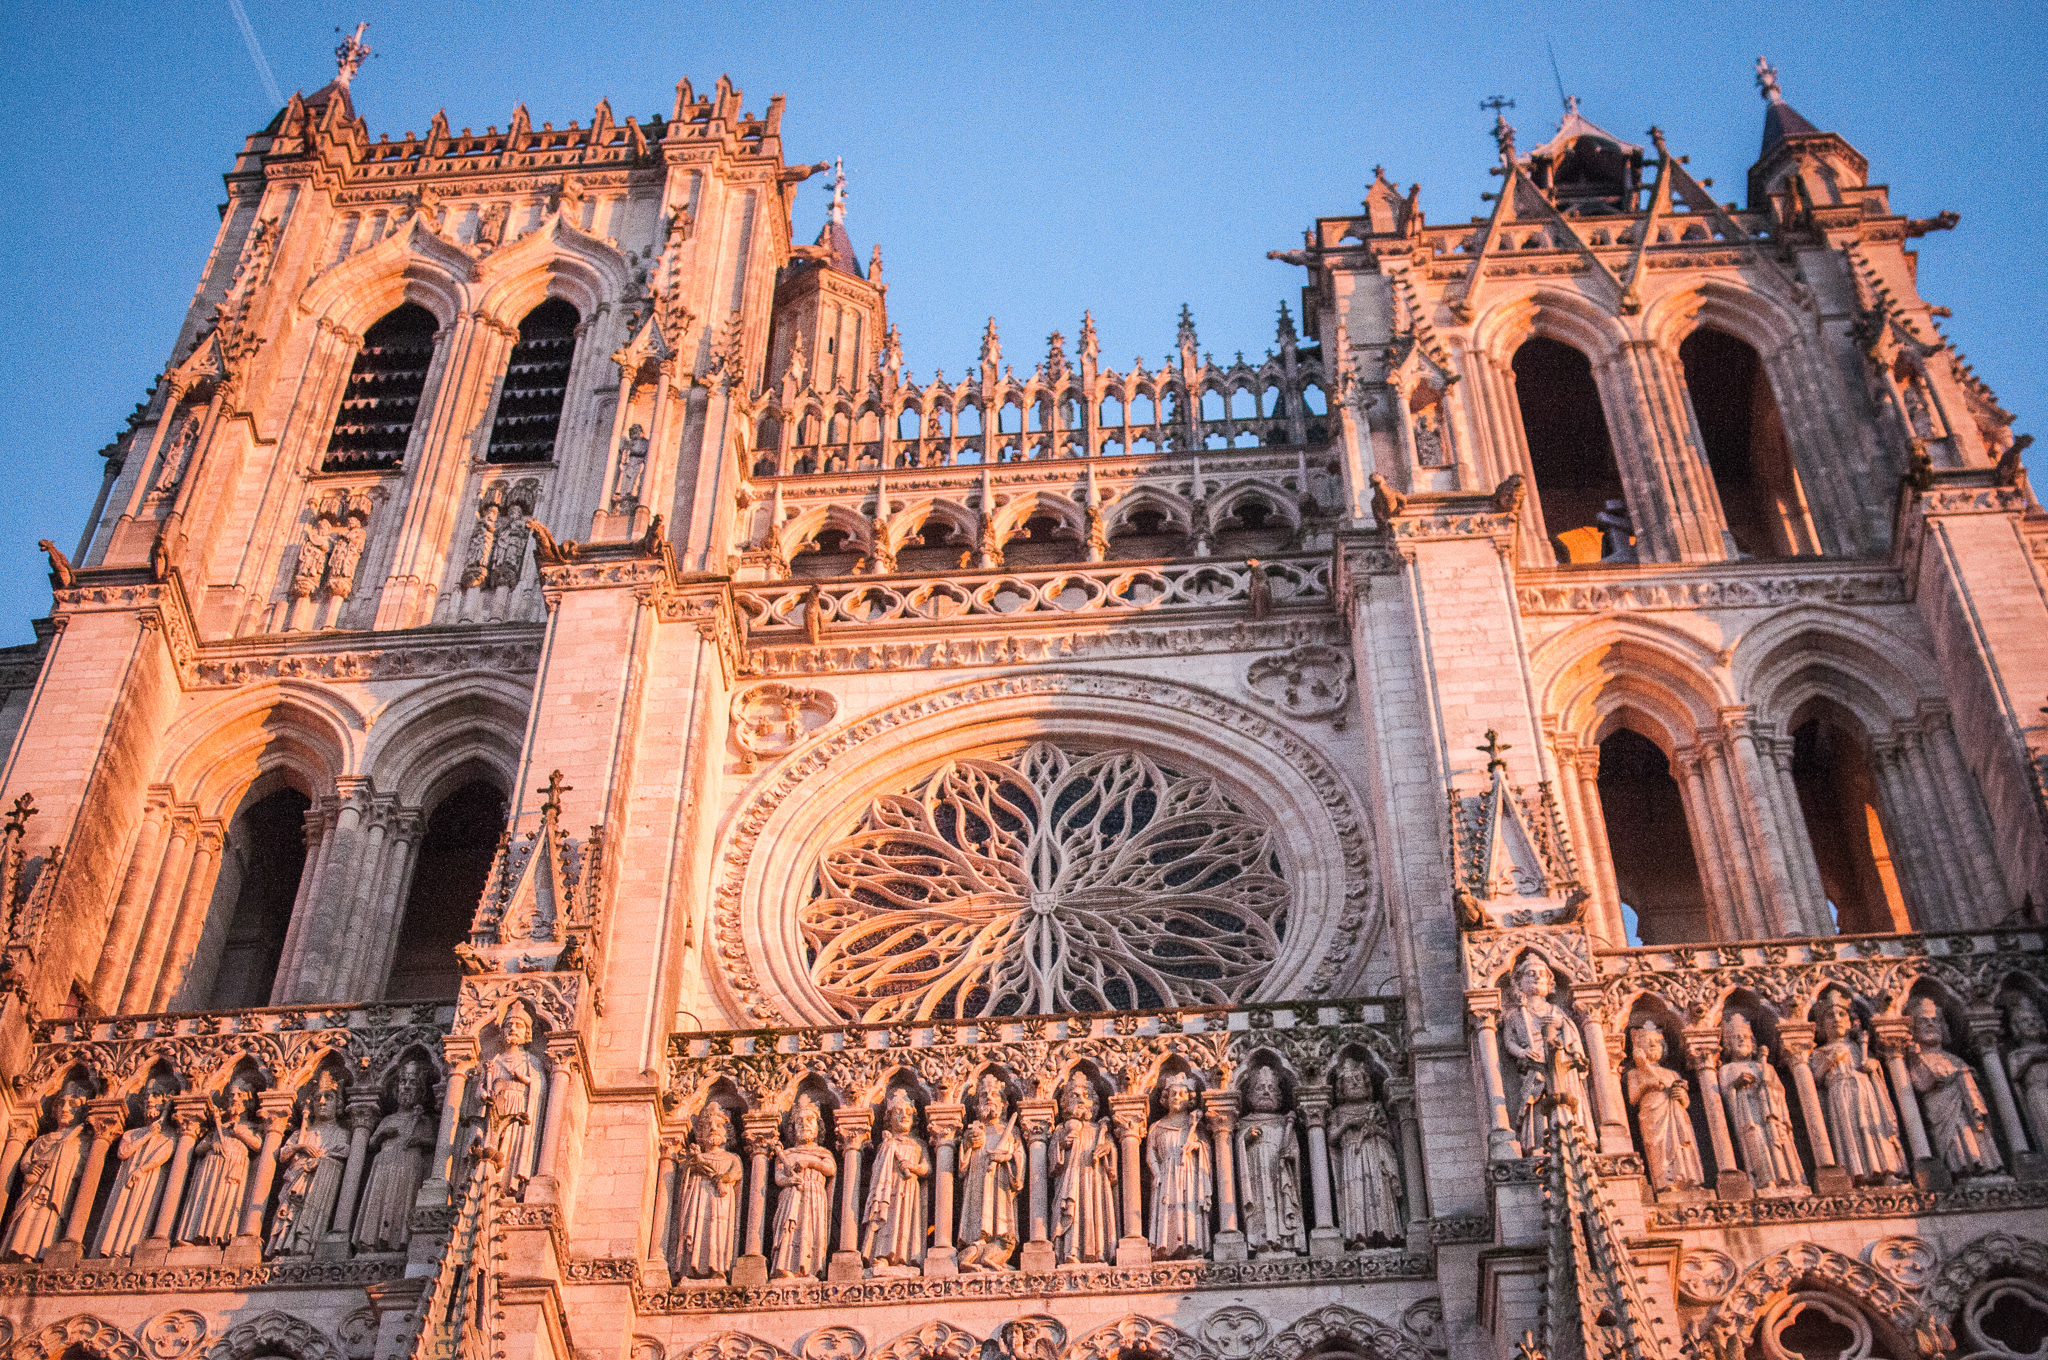 Notre Dame d'Amiens fête ses huit siècles 1220 - 2020 (c) Gaspard Truffet